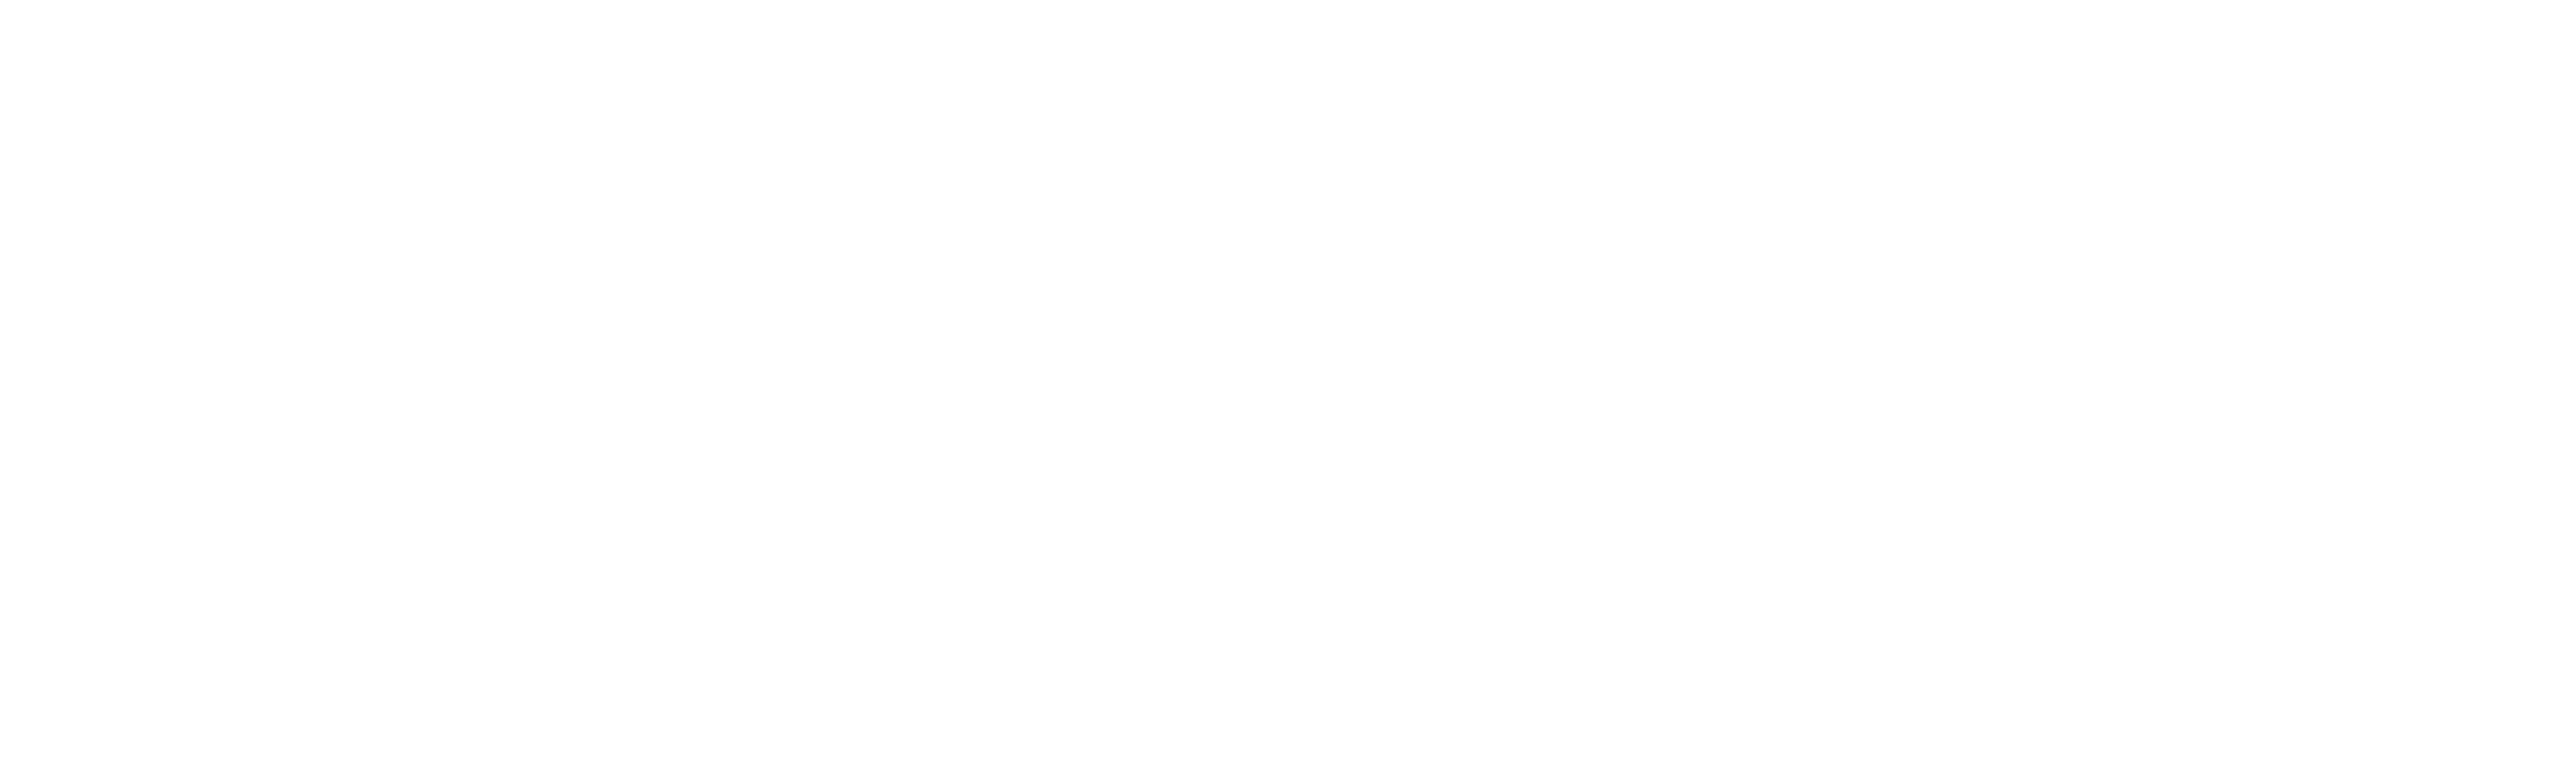 Turai Egyházközség